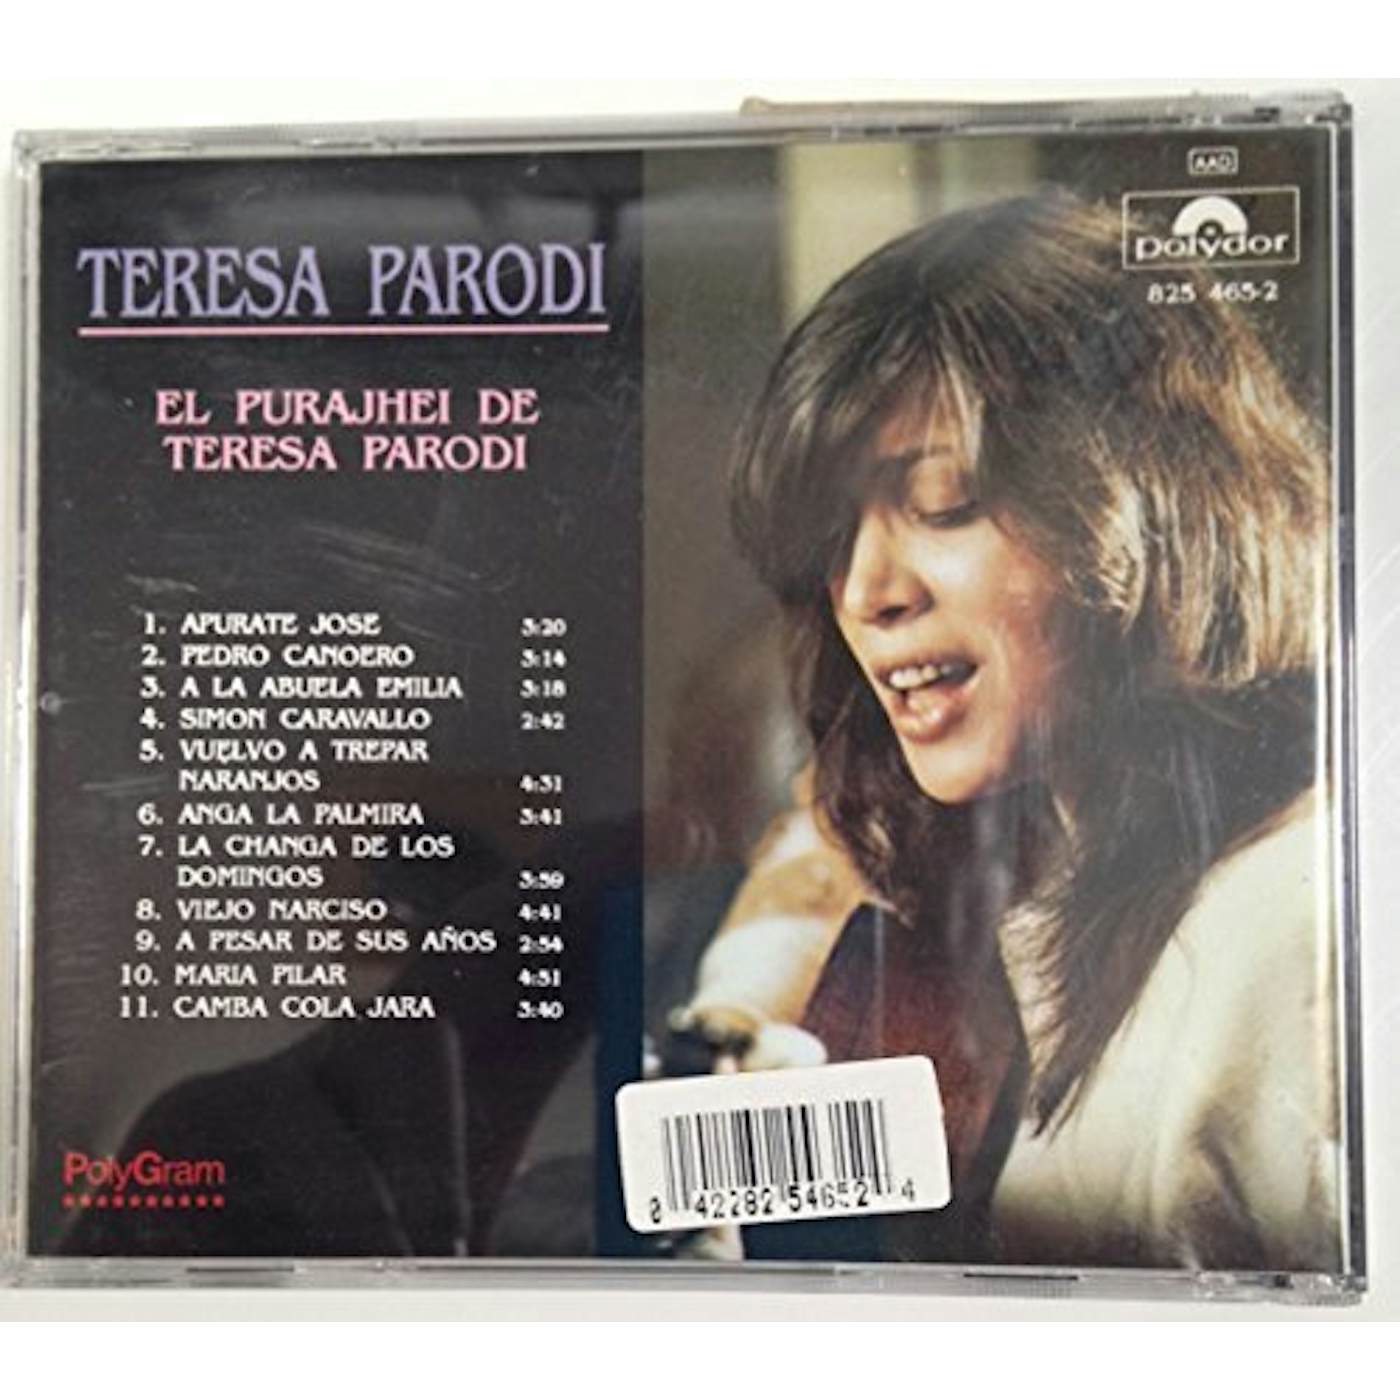 Teresa Parodi EL PURAJHEY DE CD